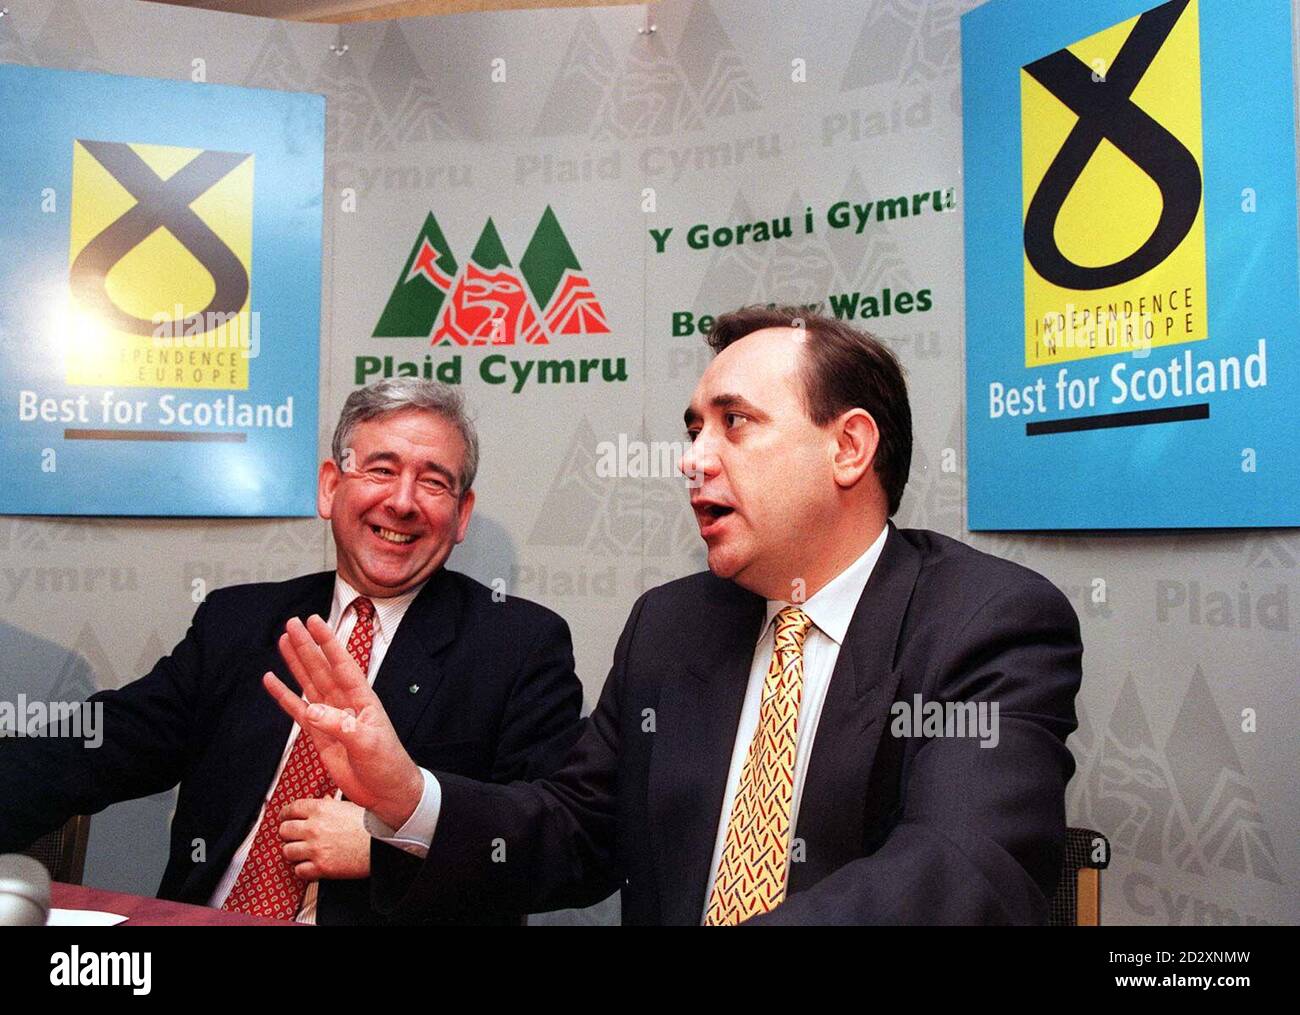 Le président de Plaid Cymru (le parti du pays de Galles), Dafydd Wigley (à gauche) et le chef du SNP, Alex Salmond (à droite), lors d'une conférence de presse conjointe à Westminster.Les deux dirigeants ont attaqué le Nouveau Parti travailliste pour avoir "proposé simplement un changement de personnel, mais pas de changement de politique" . Banque D'Images